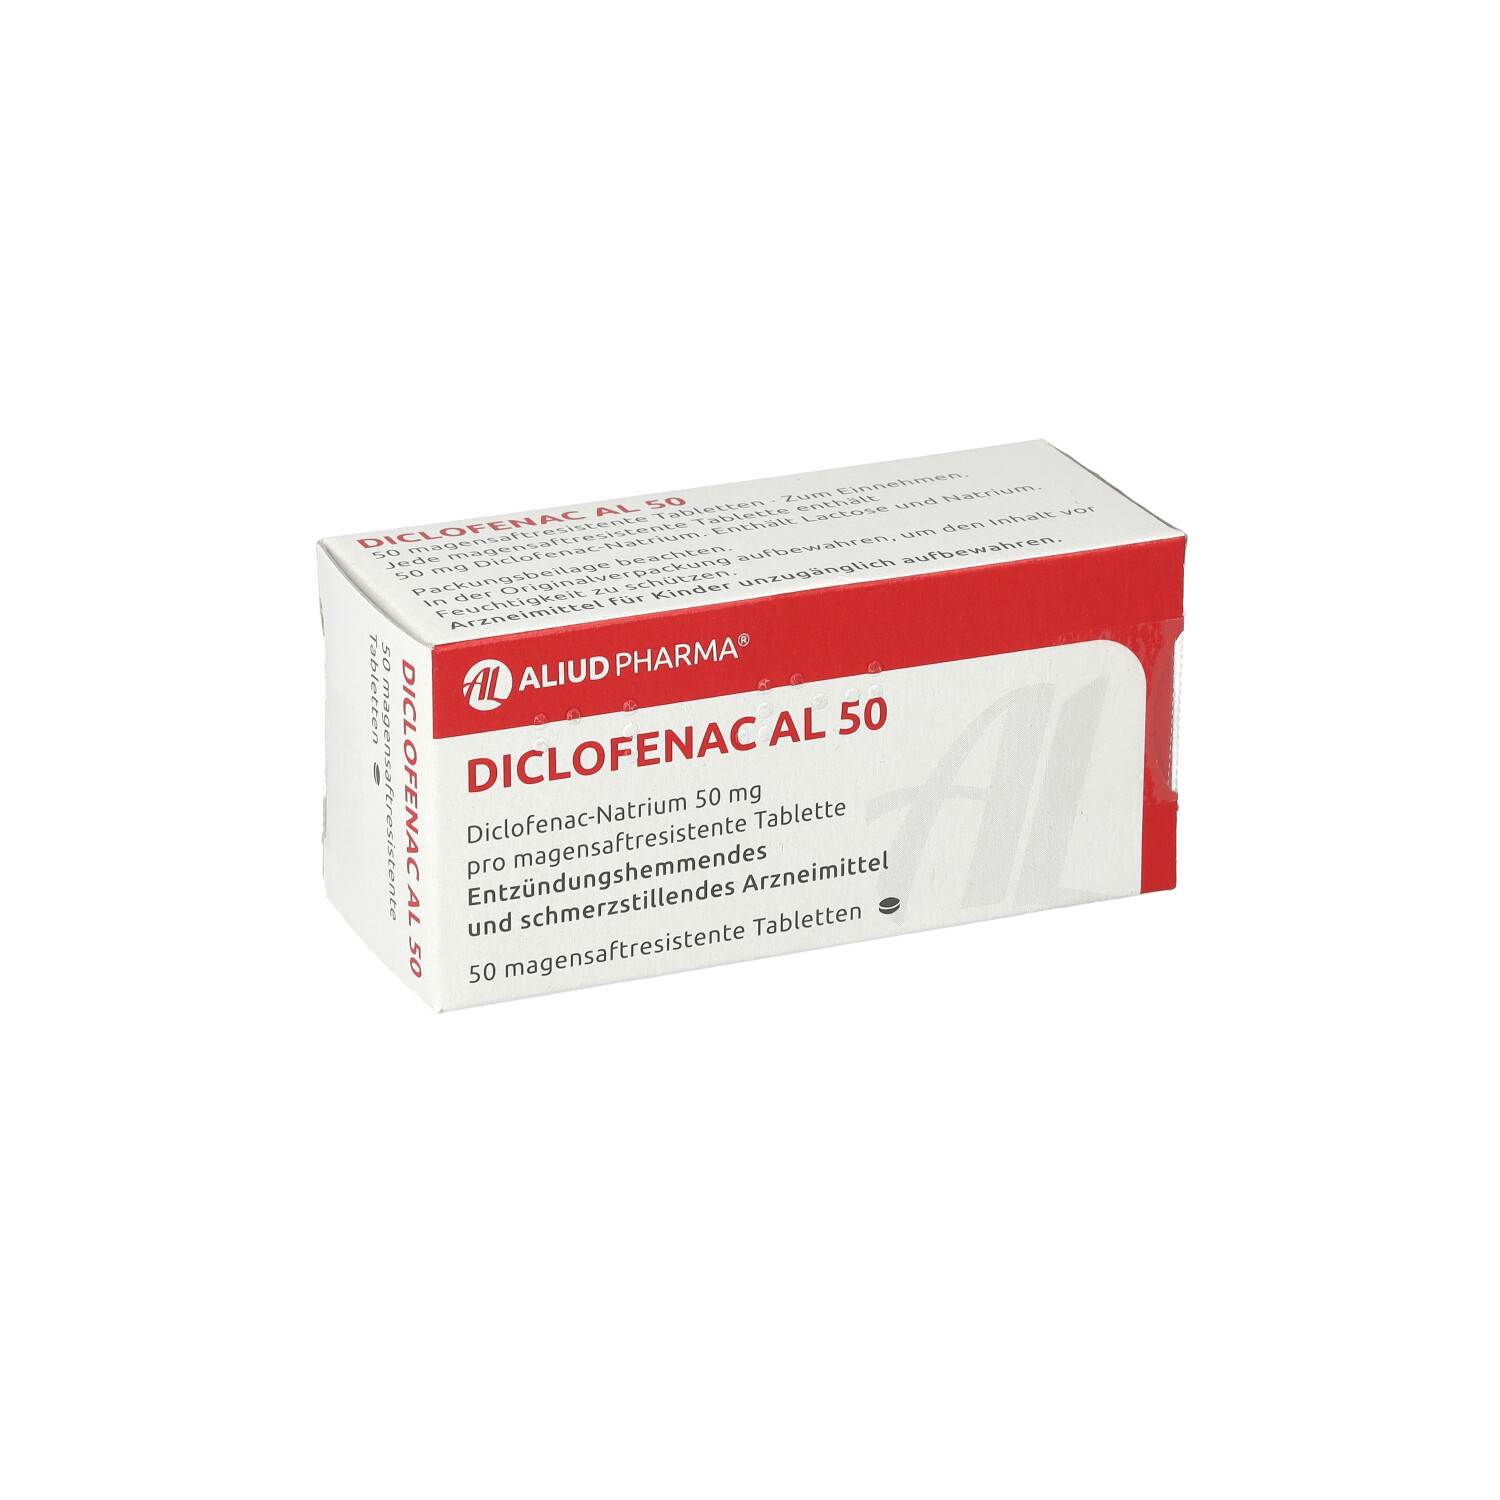 DICLOFENAC AL 50 magensaftresistente Tabletten